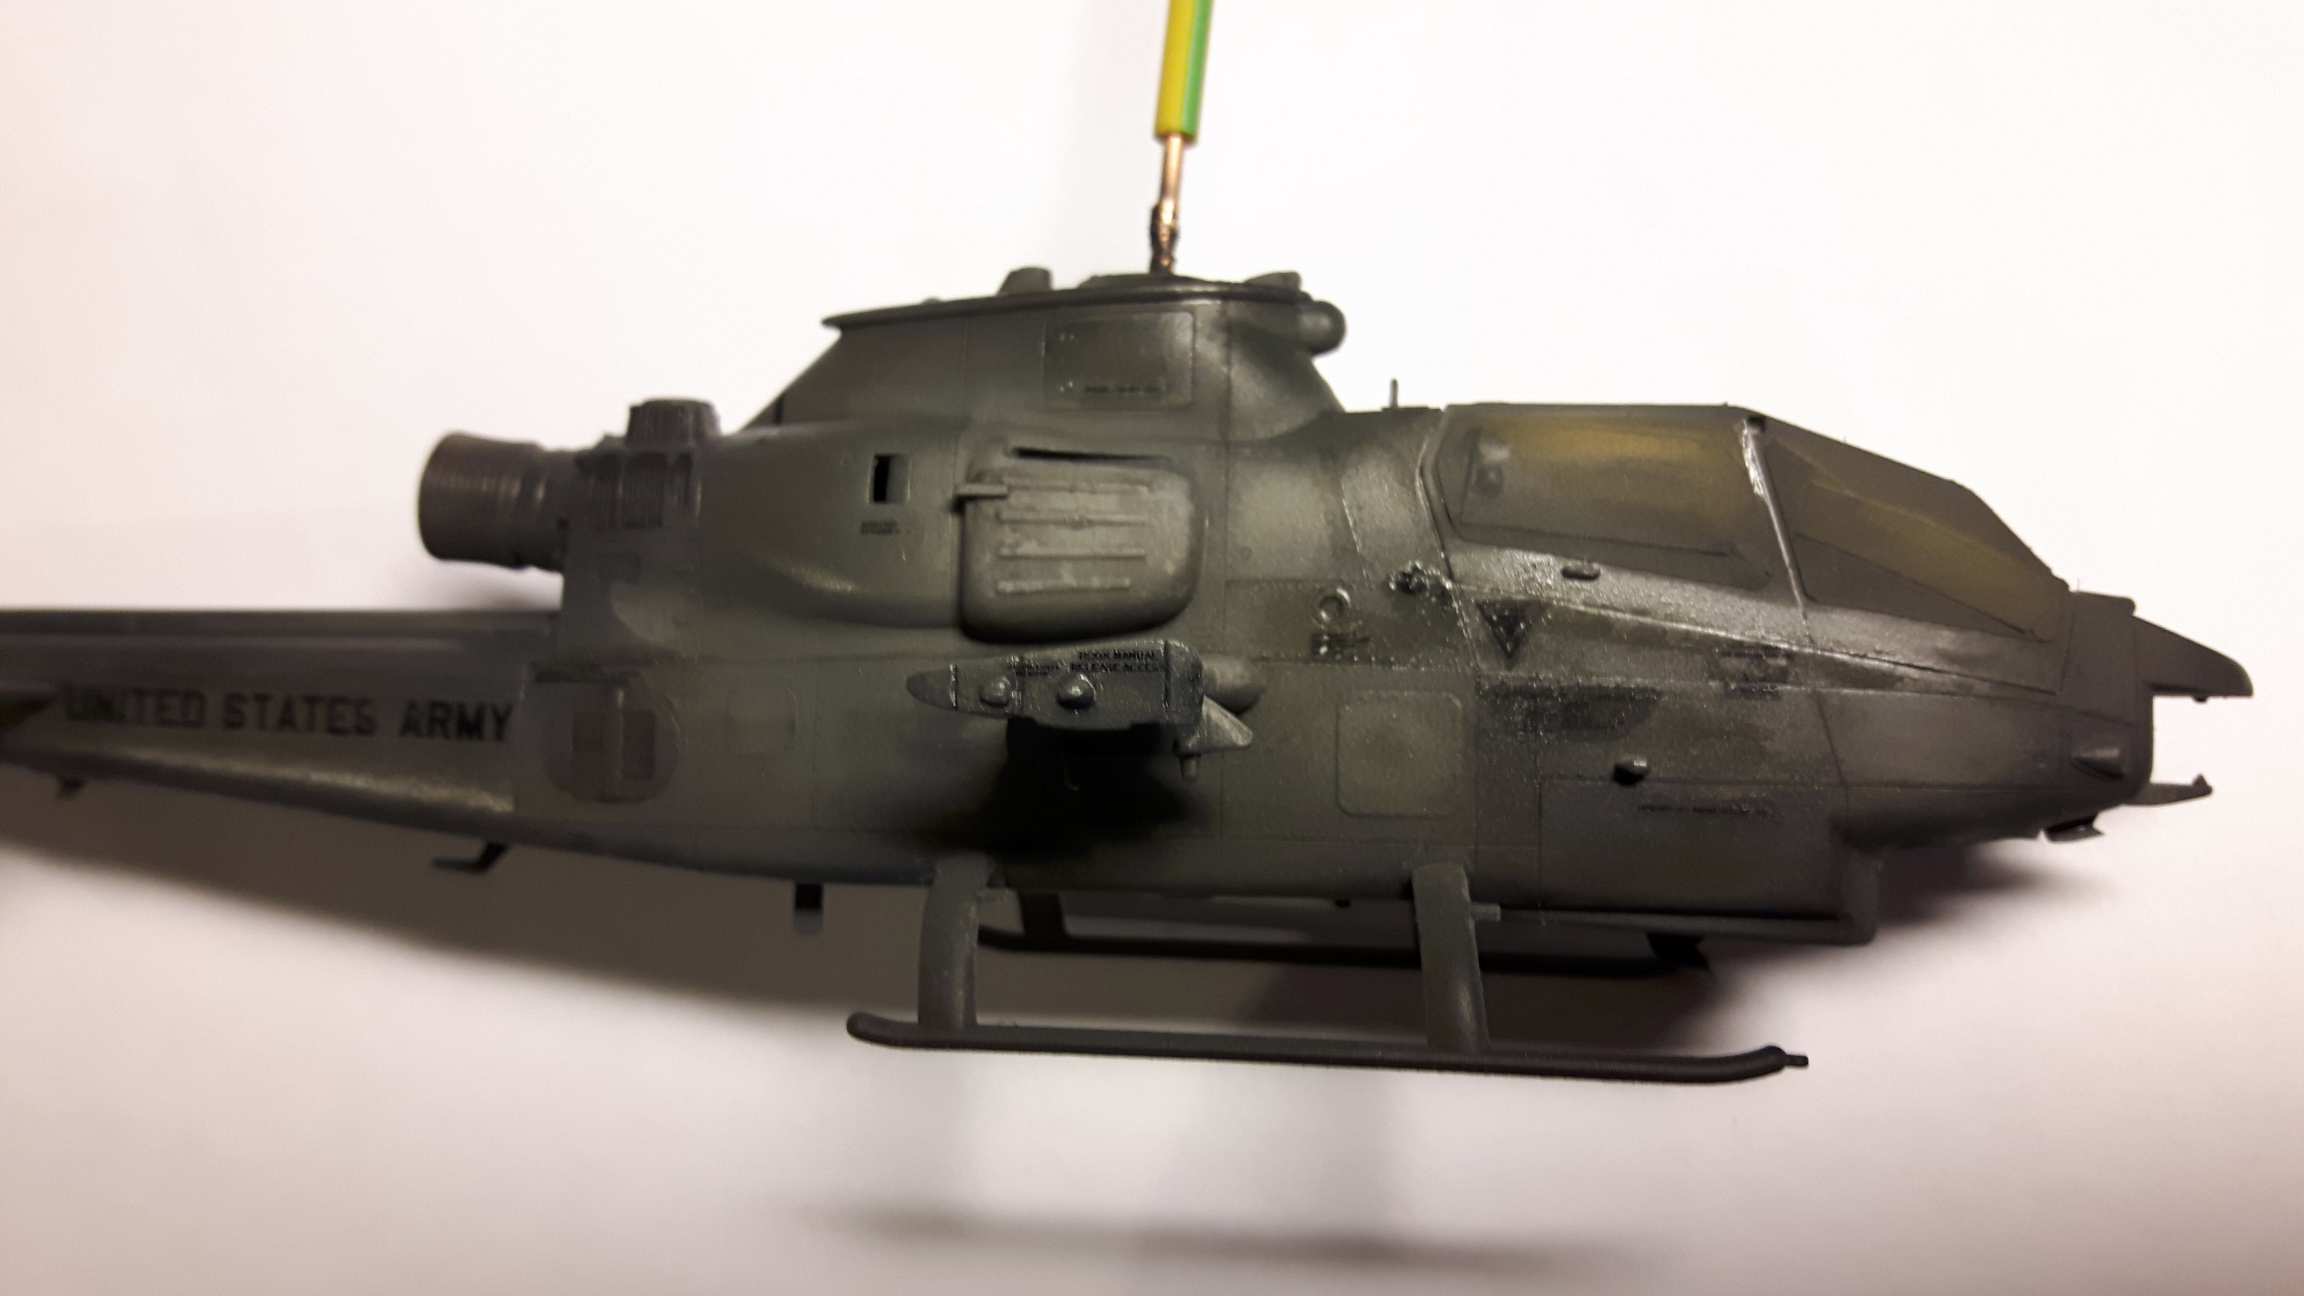 1:72 Hasegawa AH-1S by Pawel